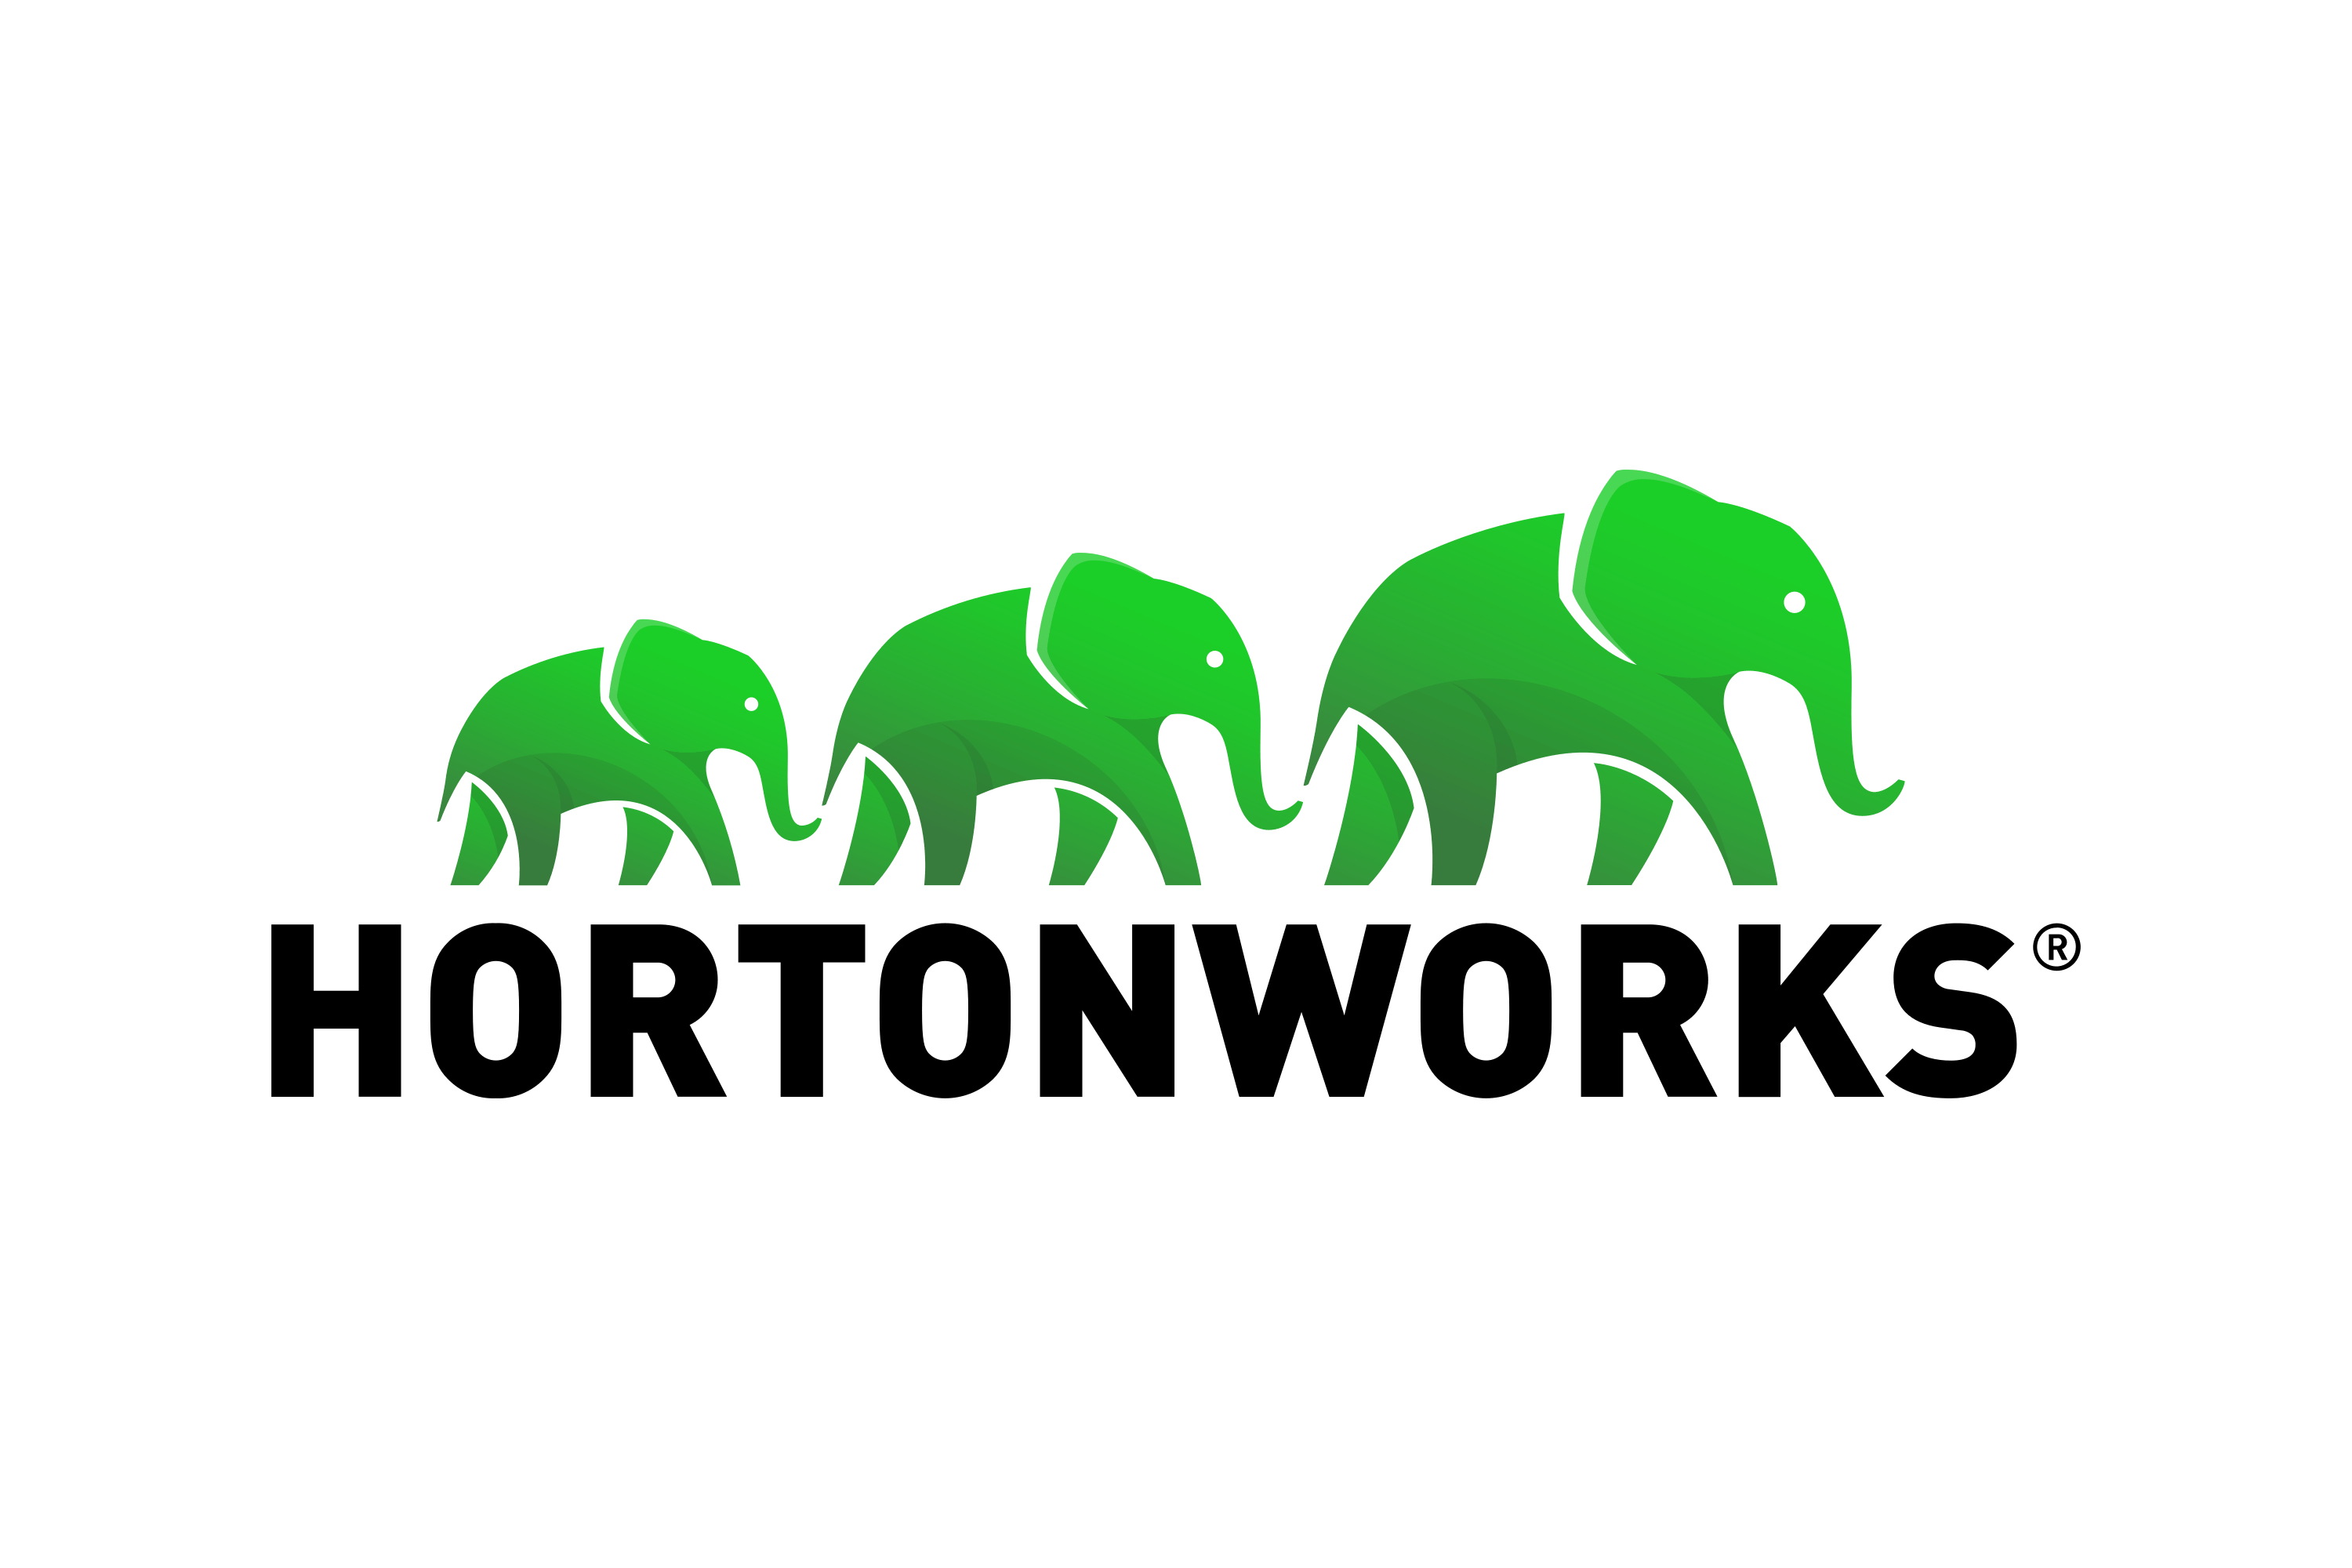 Download Hortonworks Logo in SVG Vector or PNG File Format - Logo.wine